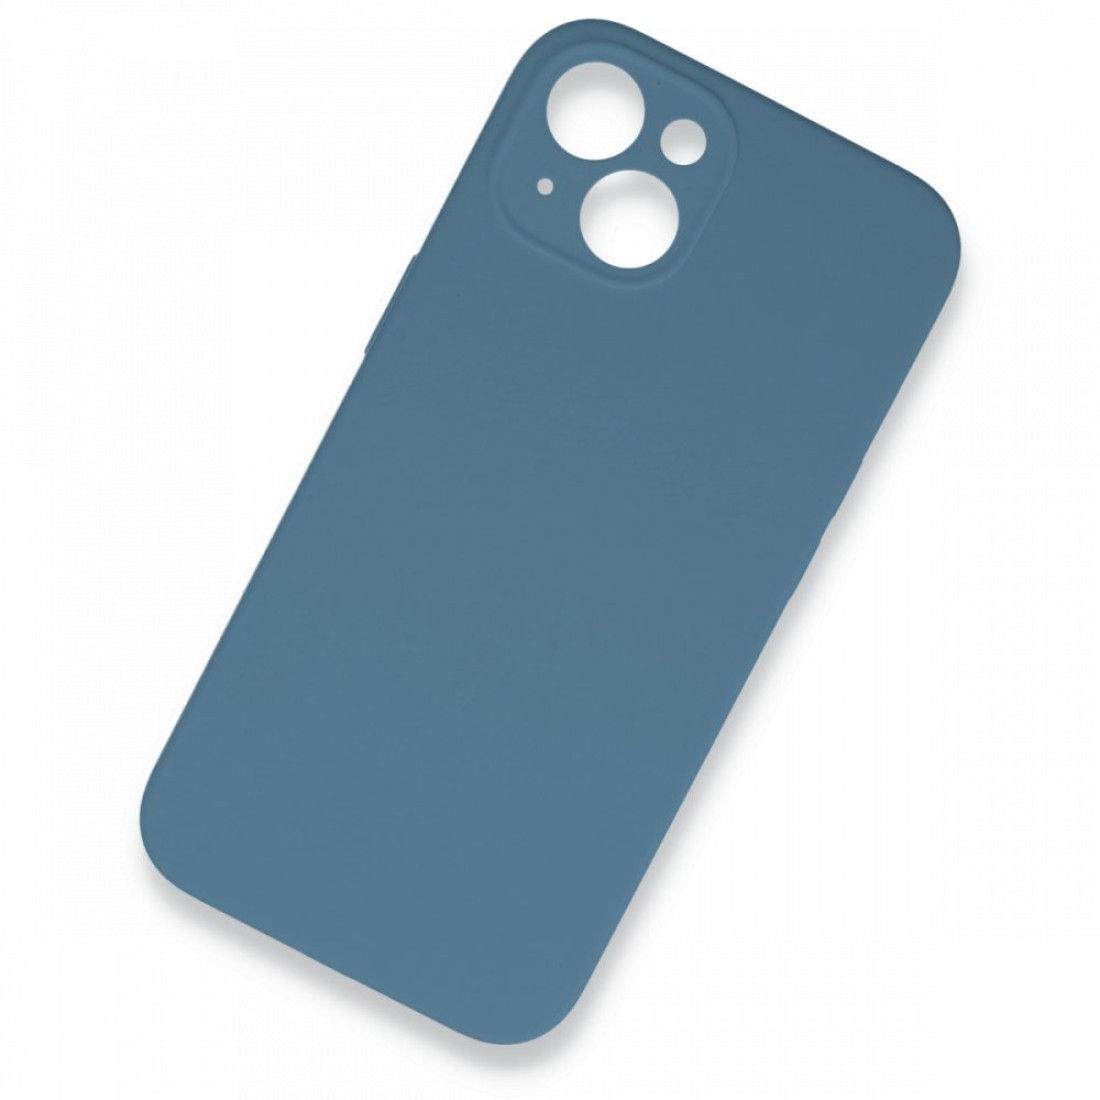 Apple iPhone 13 Kılıf Lansman Legant Silikon - Açık Mavi